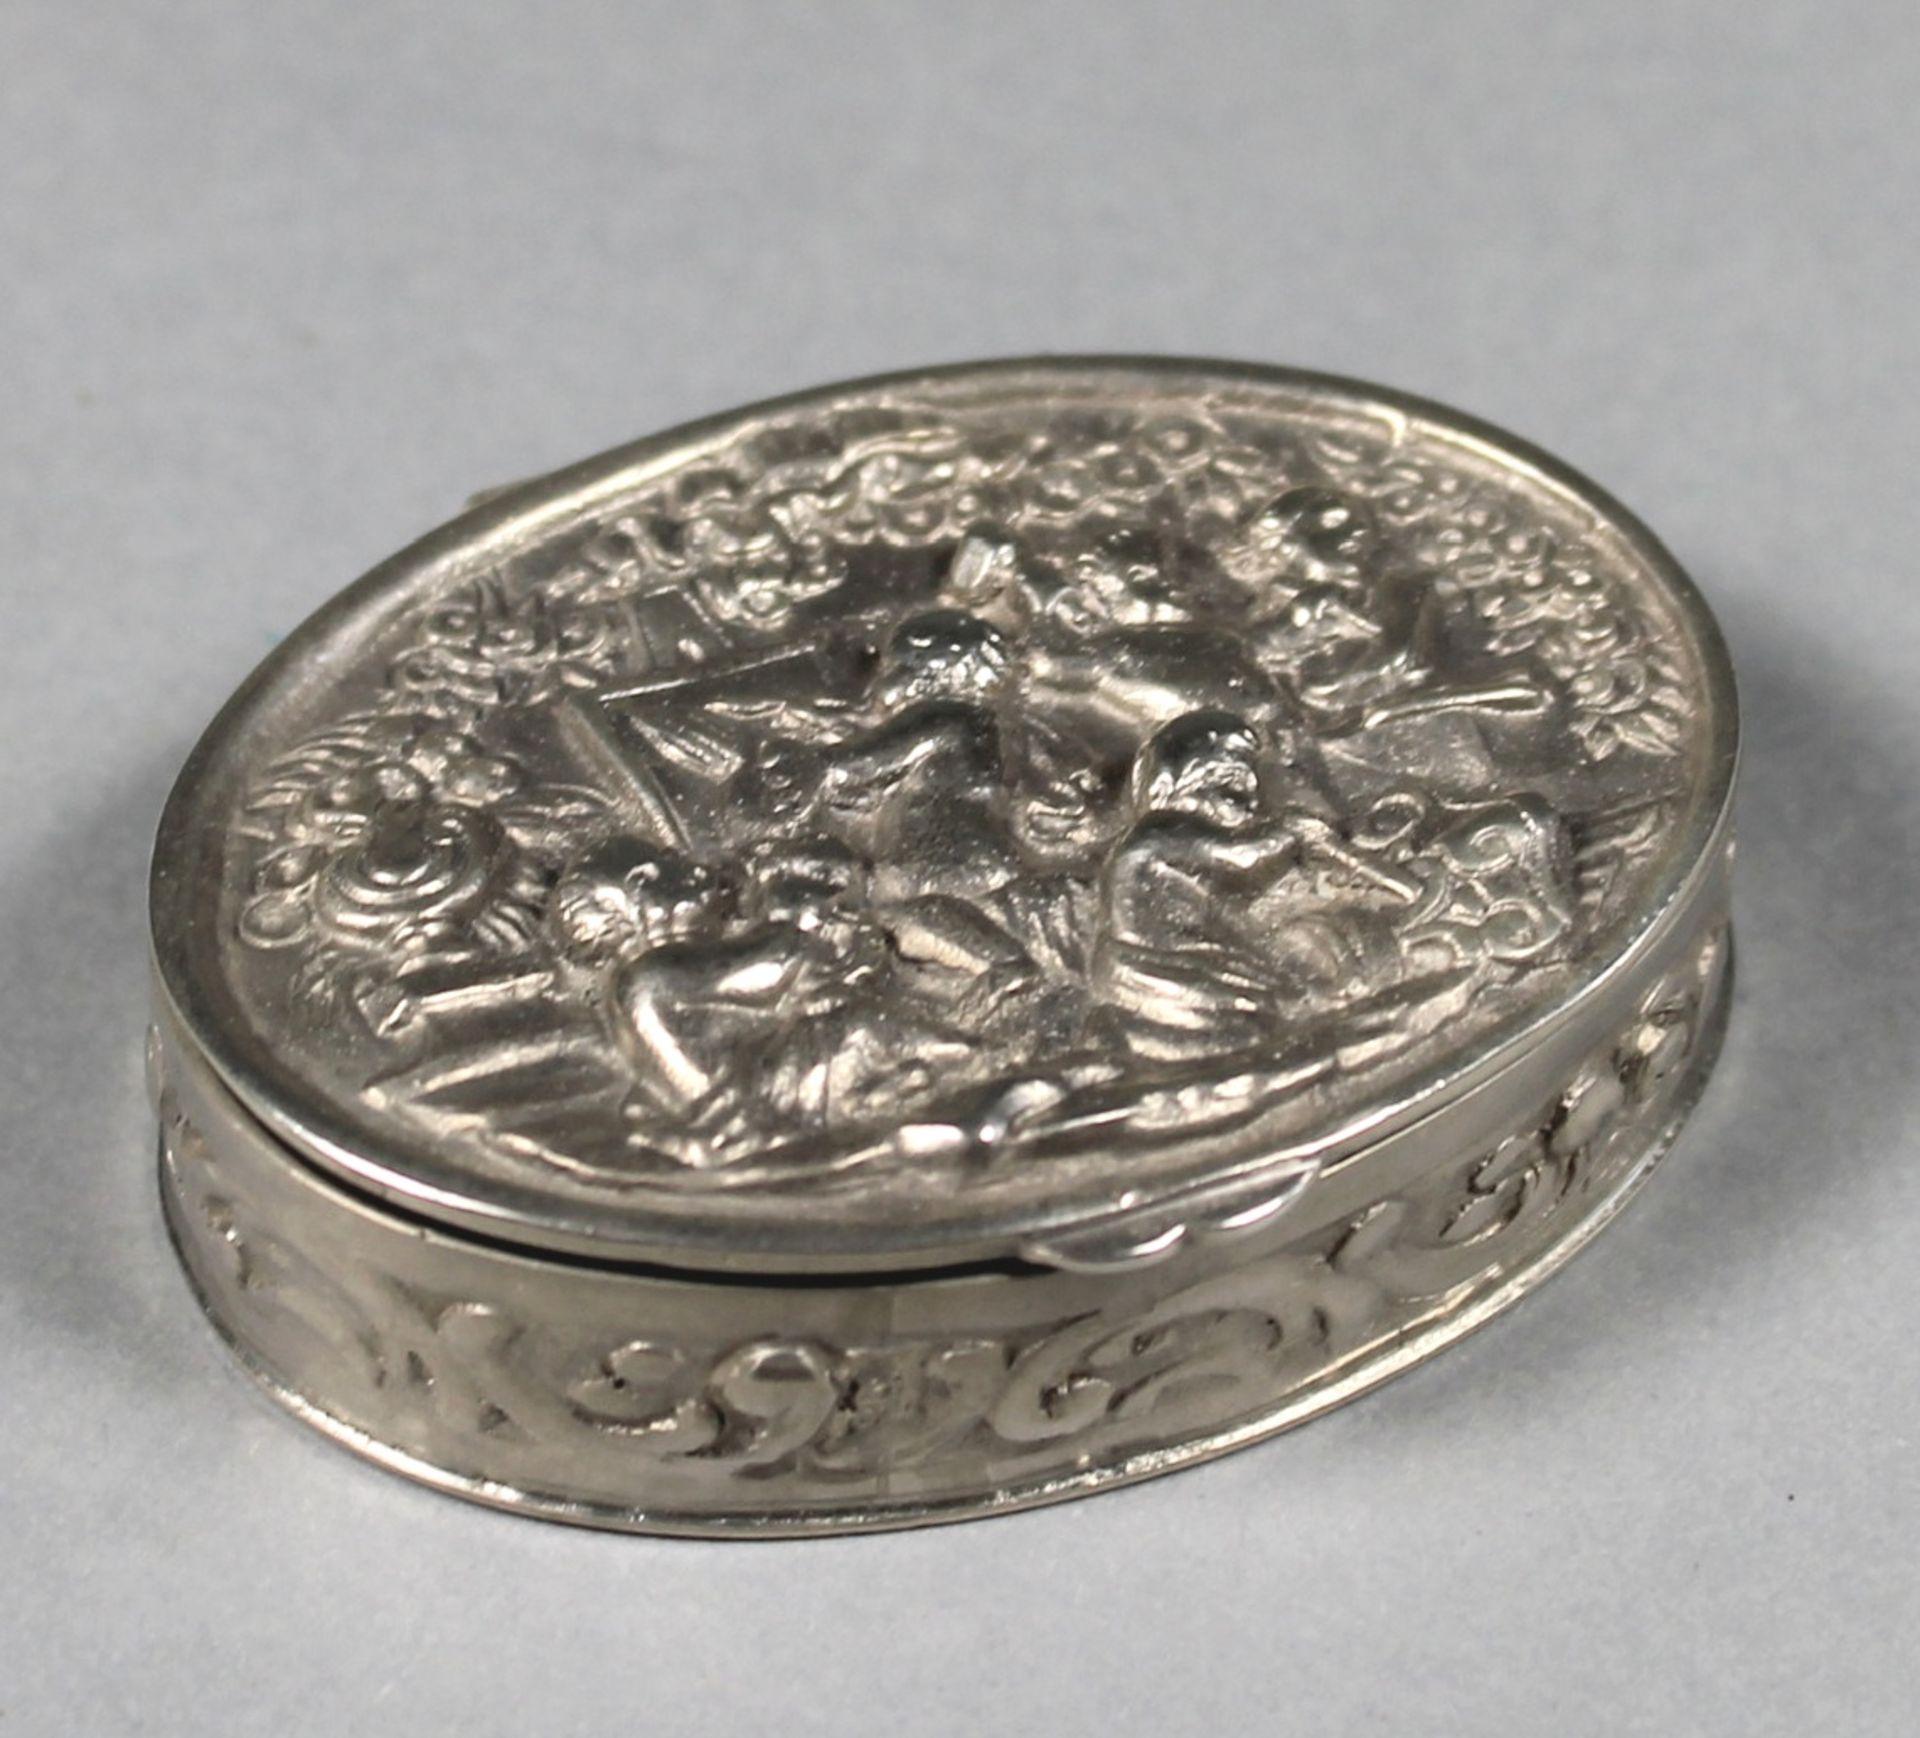 1 kleine Pillendose Silber (800/000), punziert, Deckel mit erhabenem Amorettendekor, Wandung mit - Image 2 of 2